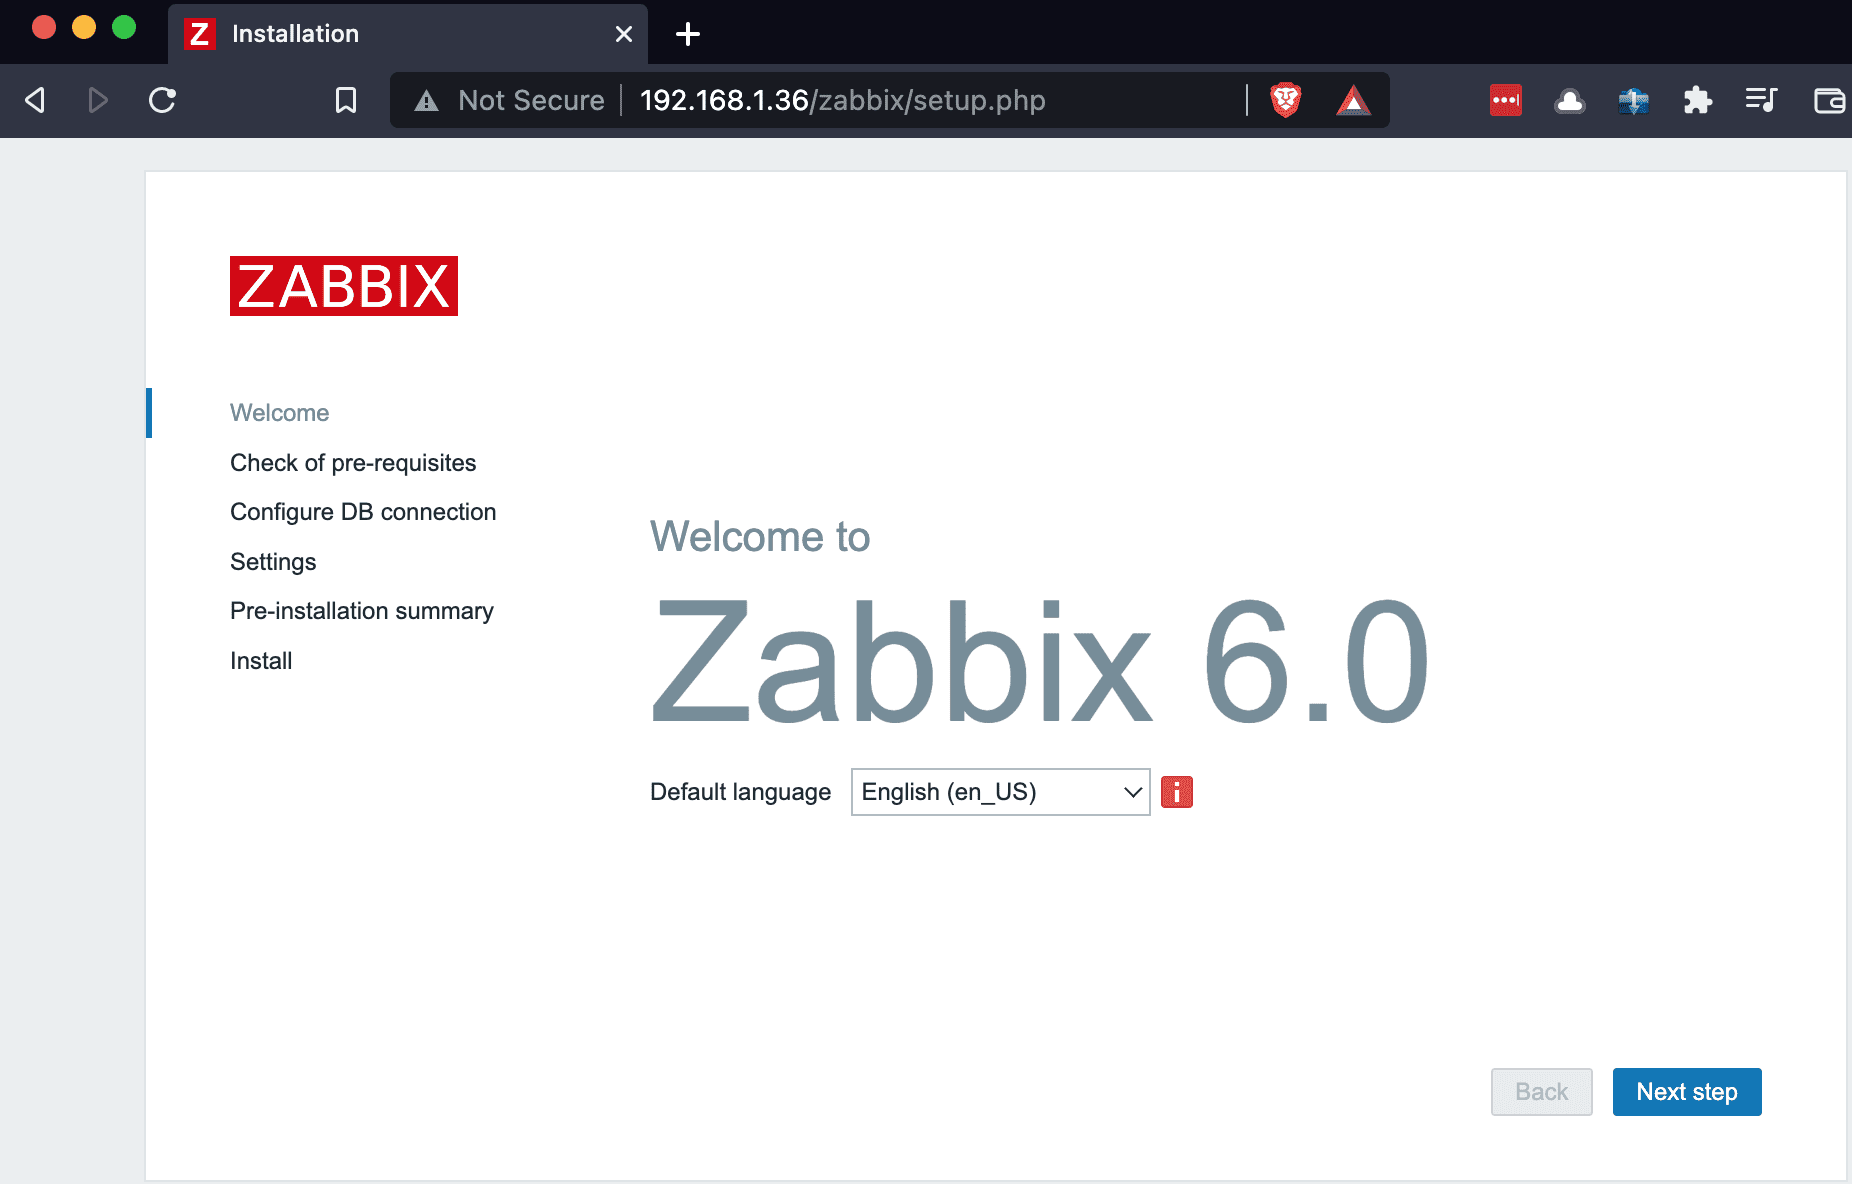 zabbix welcome page